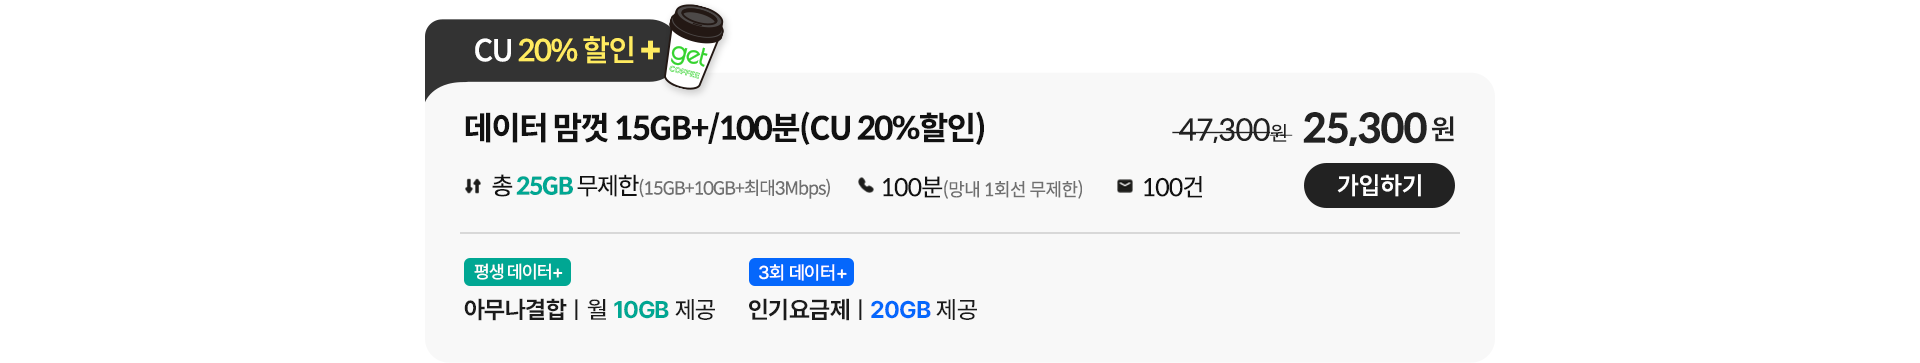 데이터 맘껏 15GB+/100분(CU 20%할인)